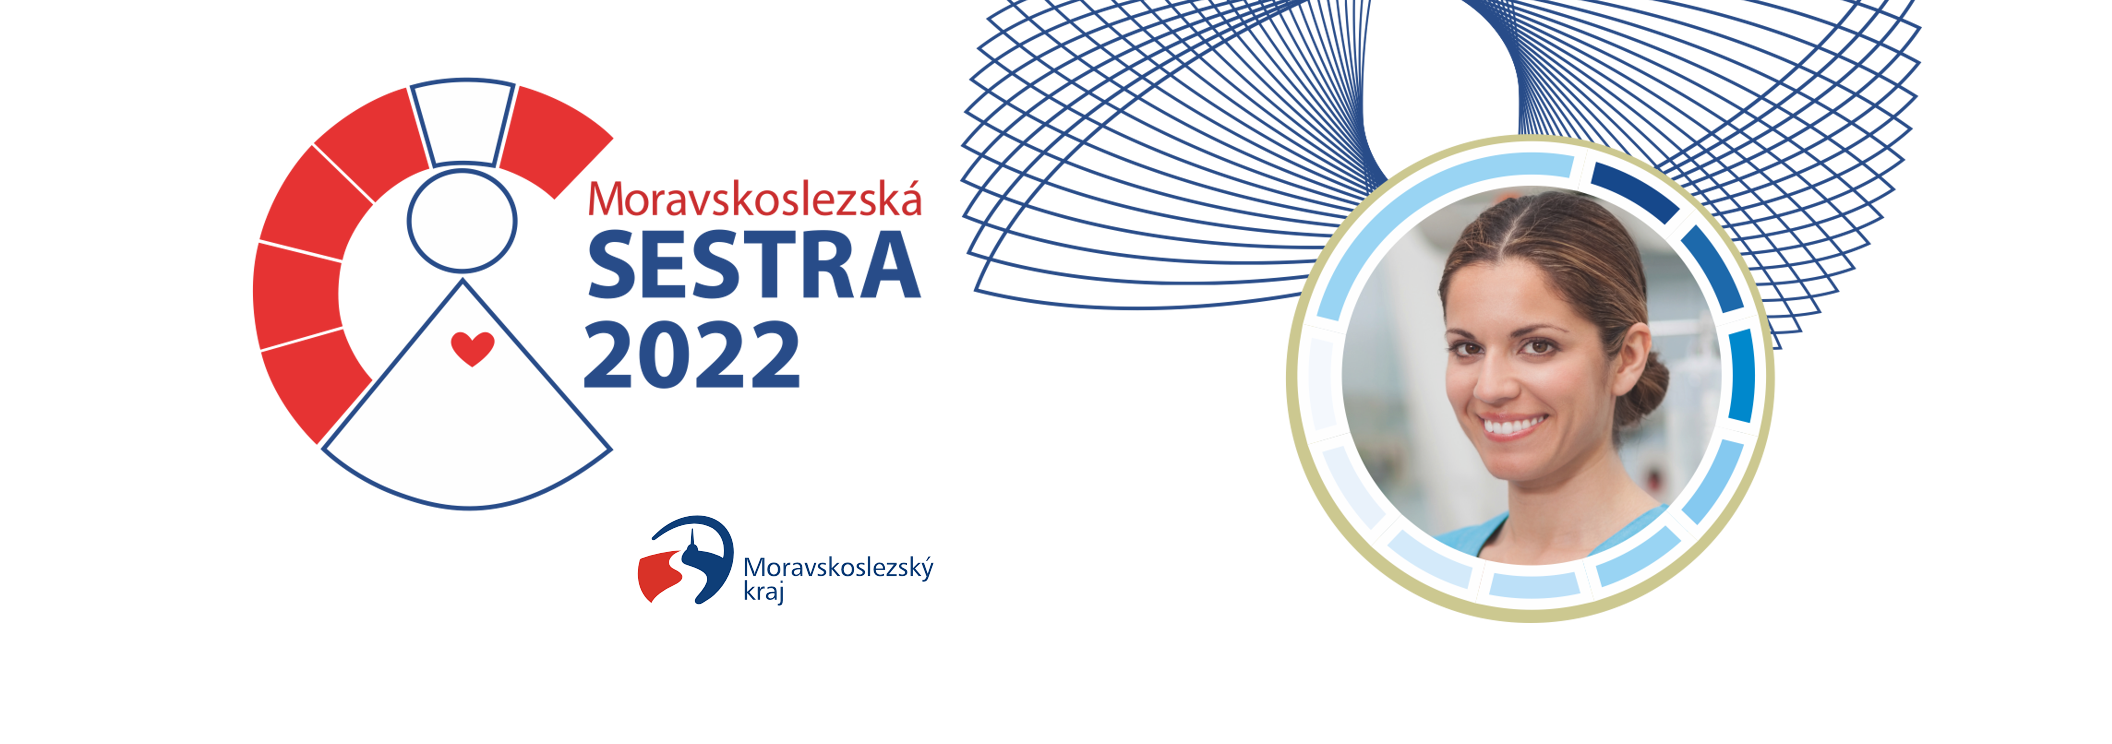 Moravskoslezská SESTRA 2022 - PŘIHLAS SVÉHO KANDIDÁTA